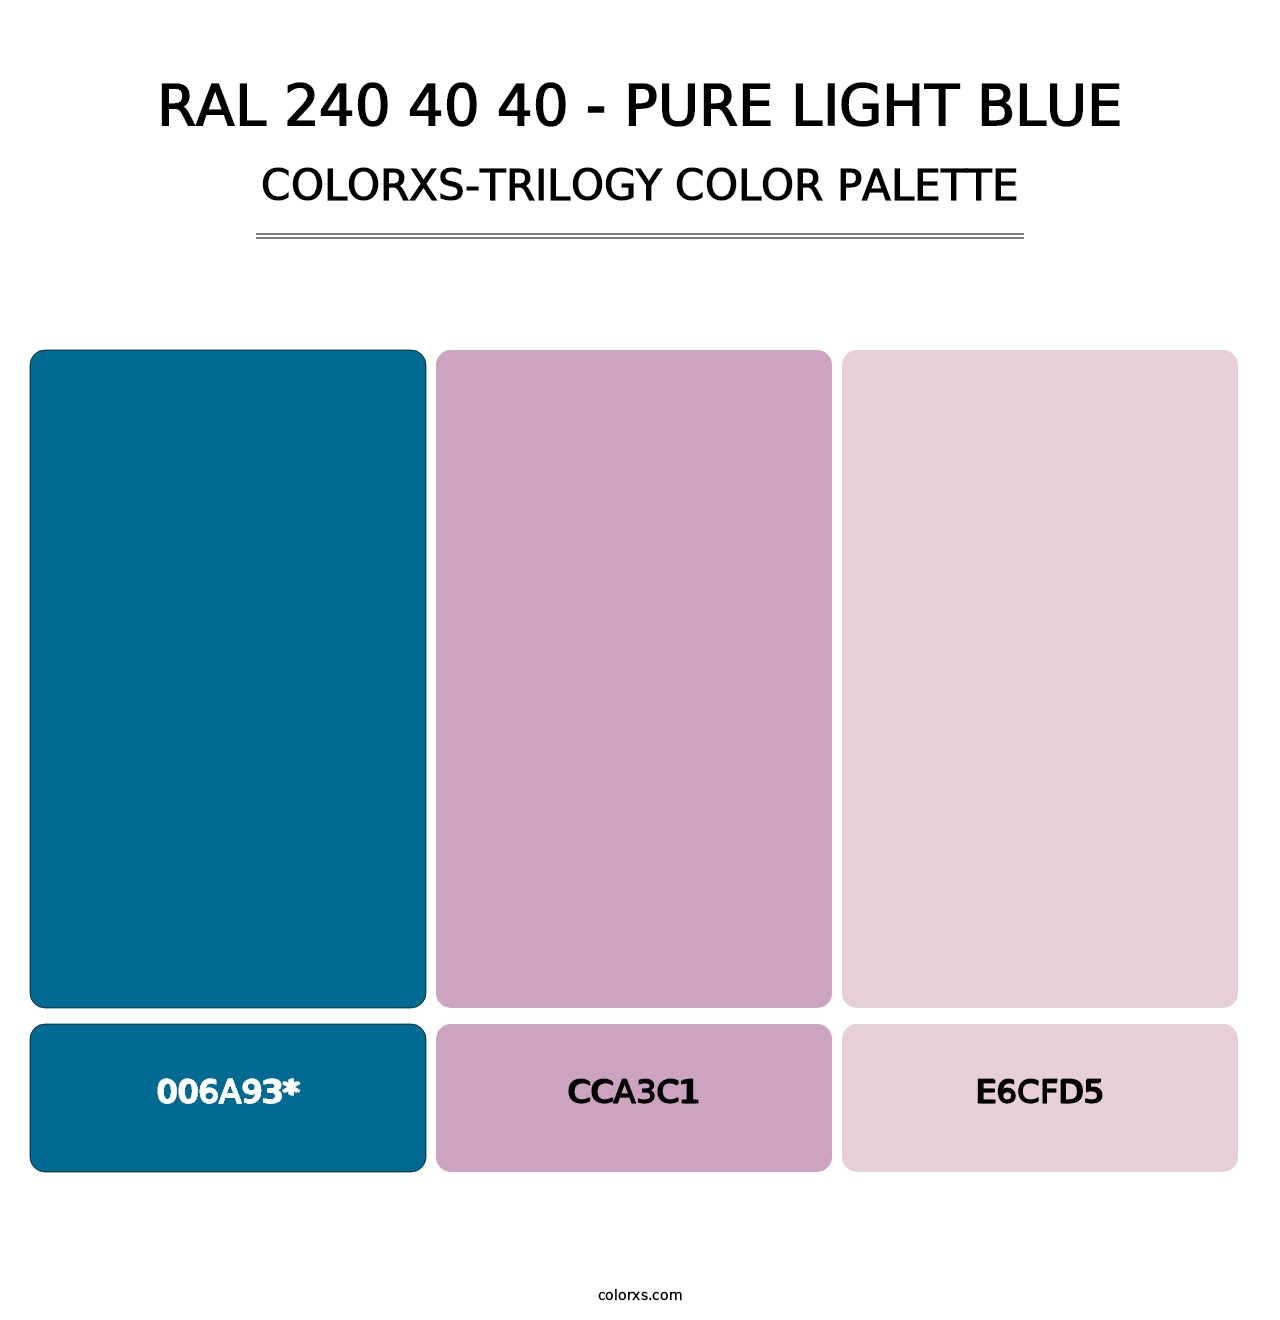 RAL 240 40 40 - Pure Light Blue - Colorxs Trilogy Palette